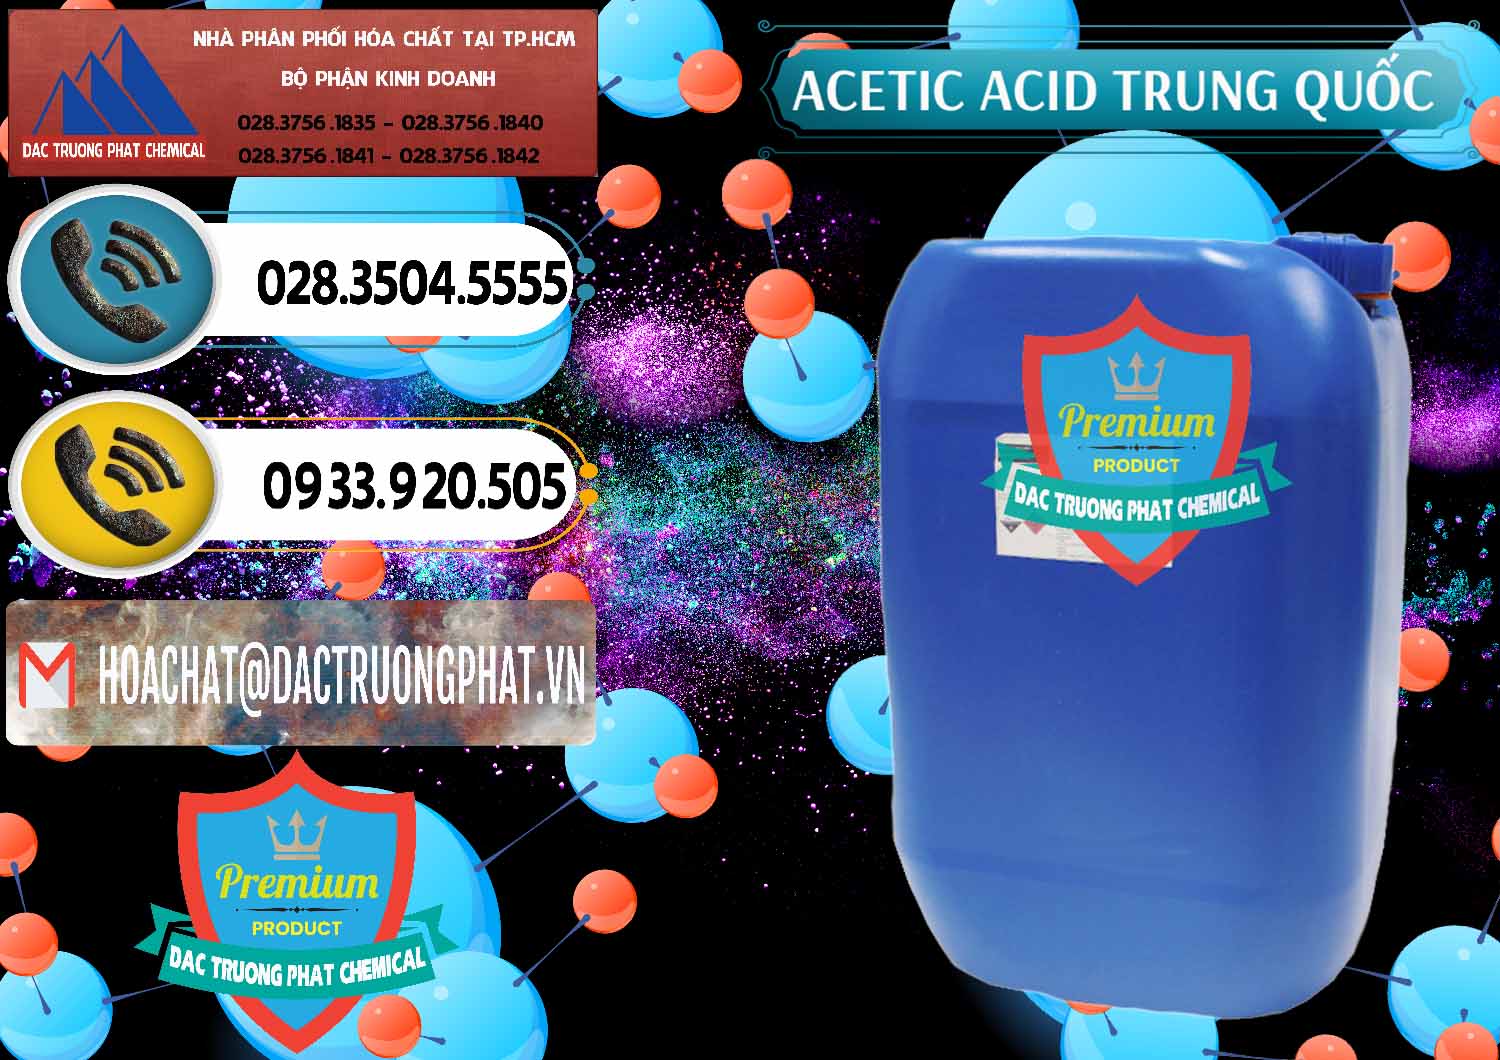 Đơn vị cung ứng & bán Acetic Acid – Axit Acetic Trung Quốc China - 0358 - Nhà cung ứng & phân phối hóa chất tại TP.HCM - hoachatdetnhuom.vn